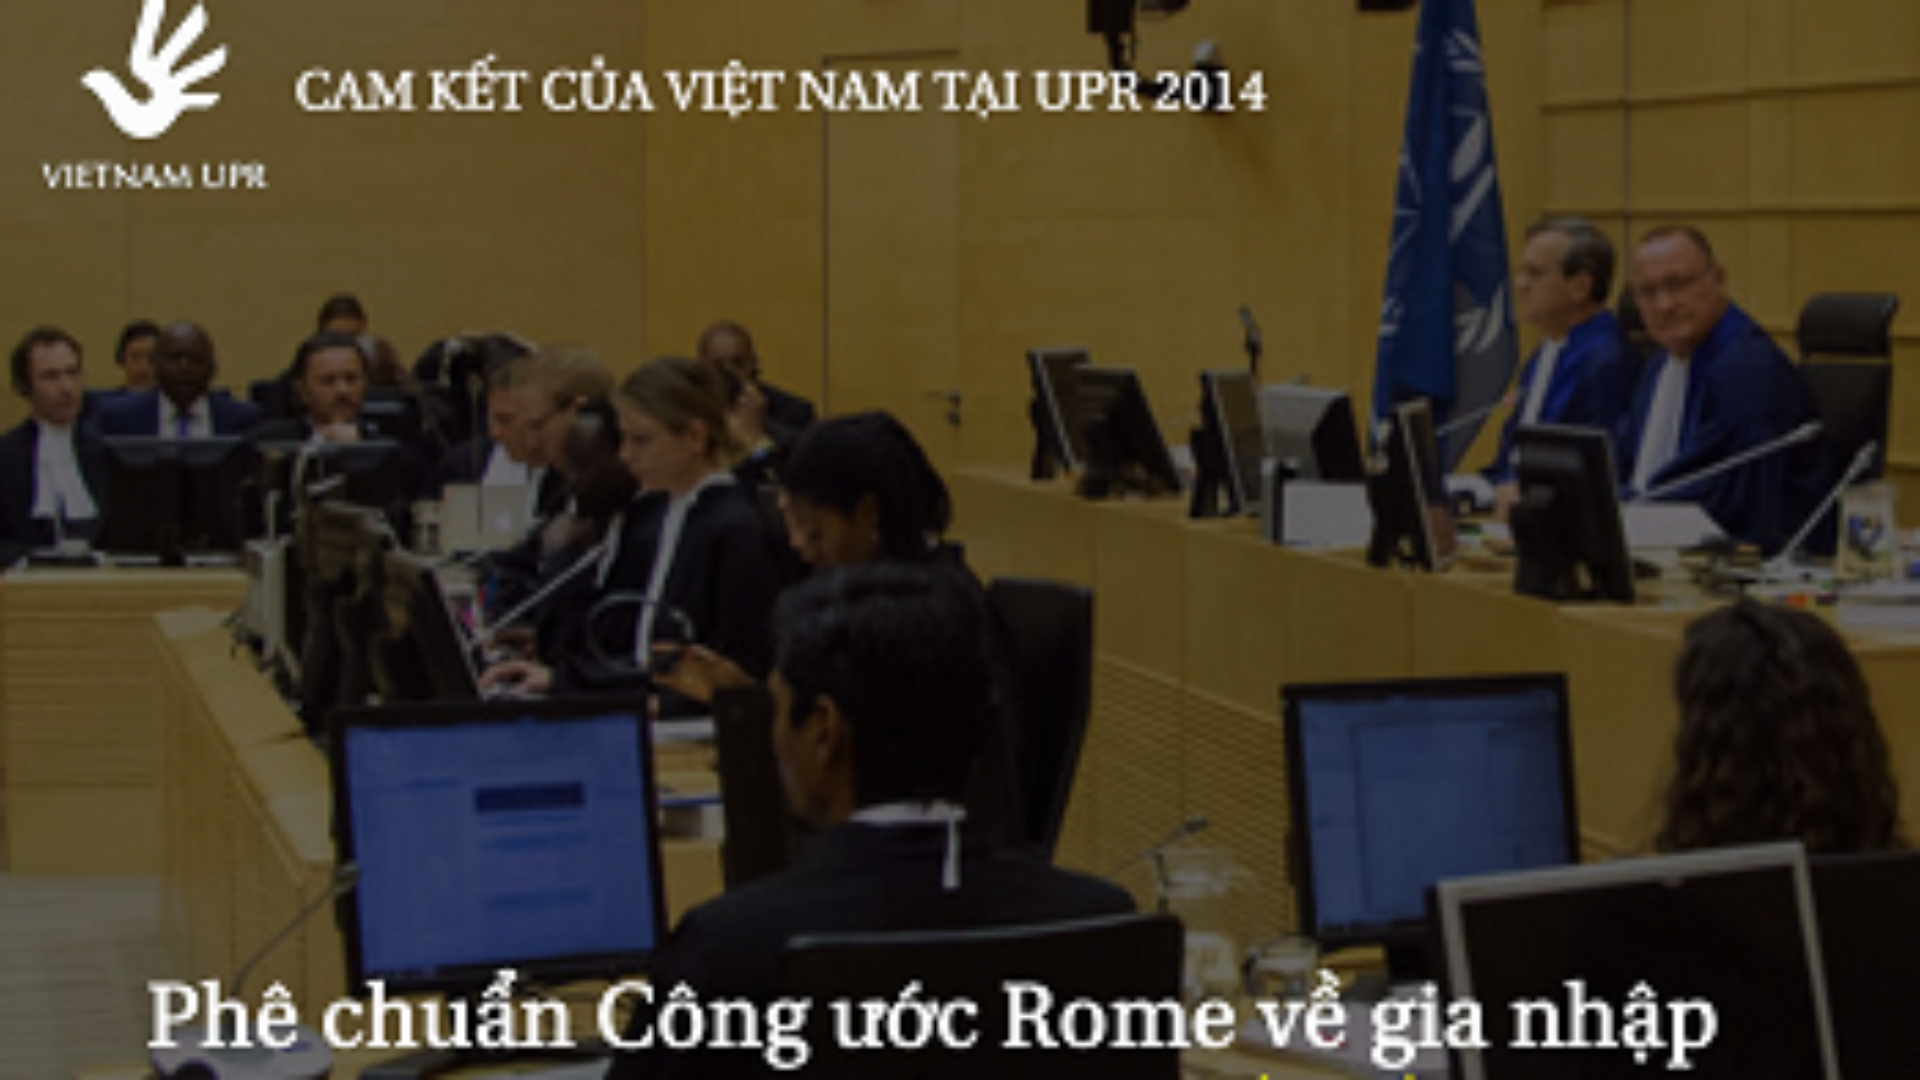 (Tiếng Việt) Bạn có biết: Việt Nam đã phê chuẩn Công ước Rome về gia nhập Tòa án Hình sự Quốc tế tại UPR 2014?